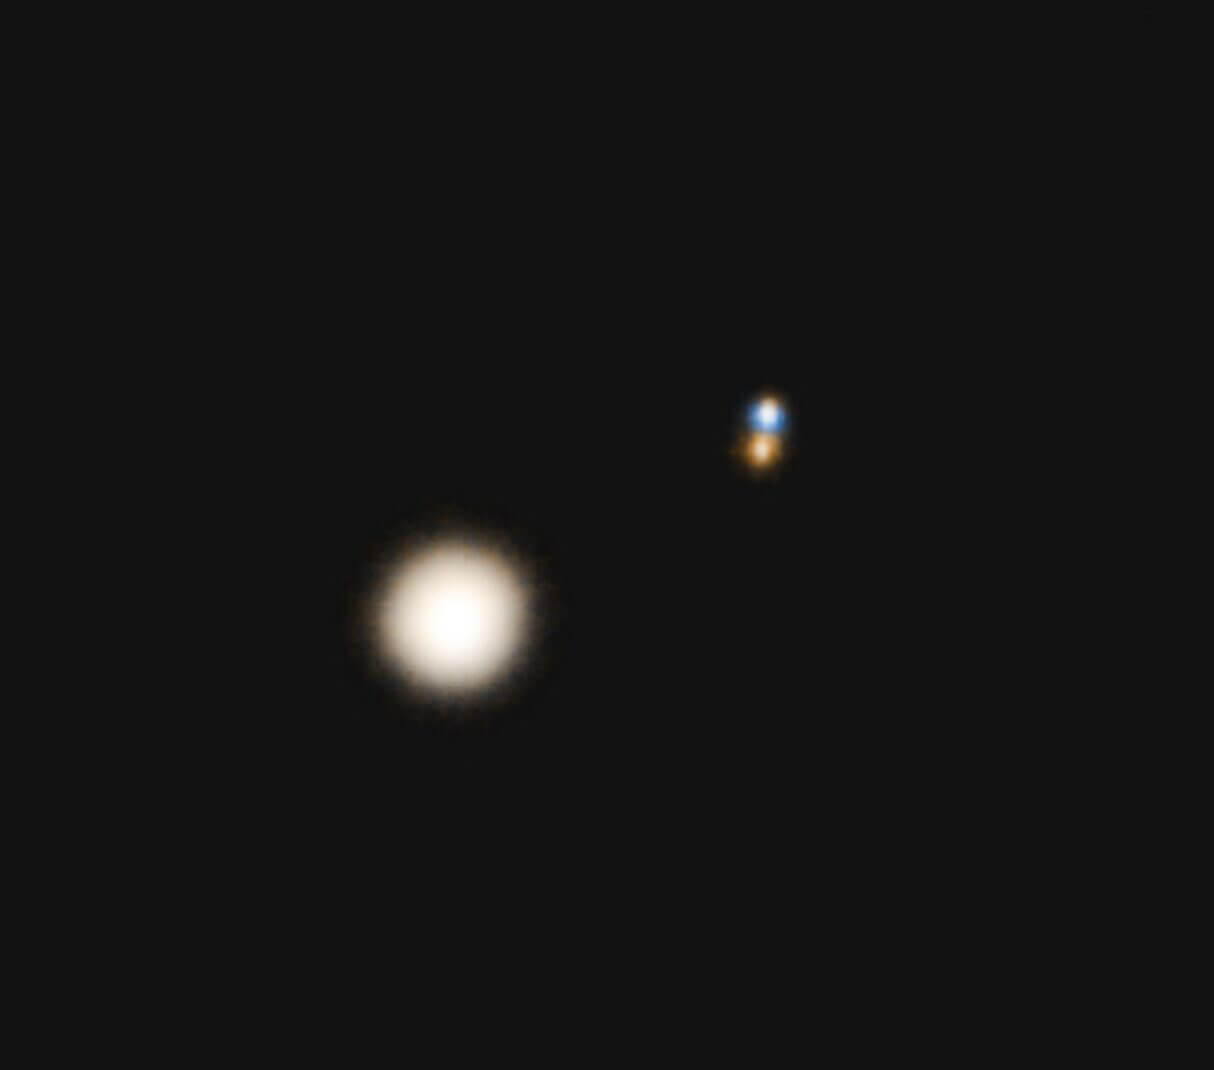 【▲ 図2: エリダヌス座40番星は、2個の恒星と1個の白色矮星で構成された三重連星です。最も明るい恒星がエリダヌス座40番星Aです。（Credit: Azhikerdude）】